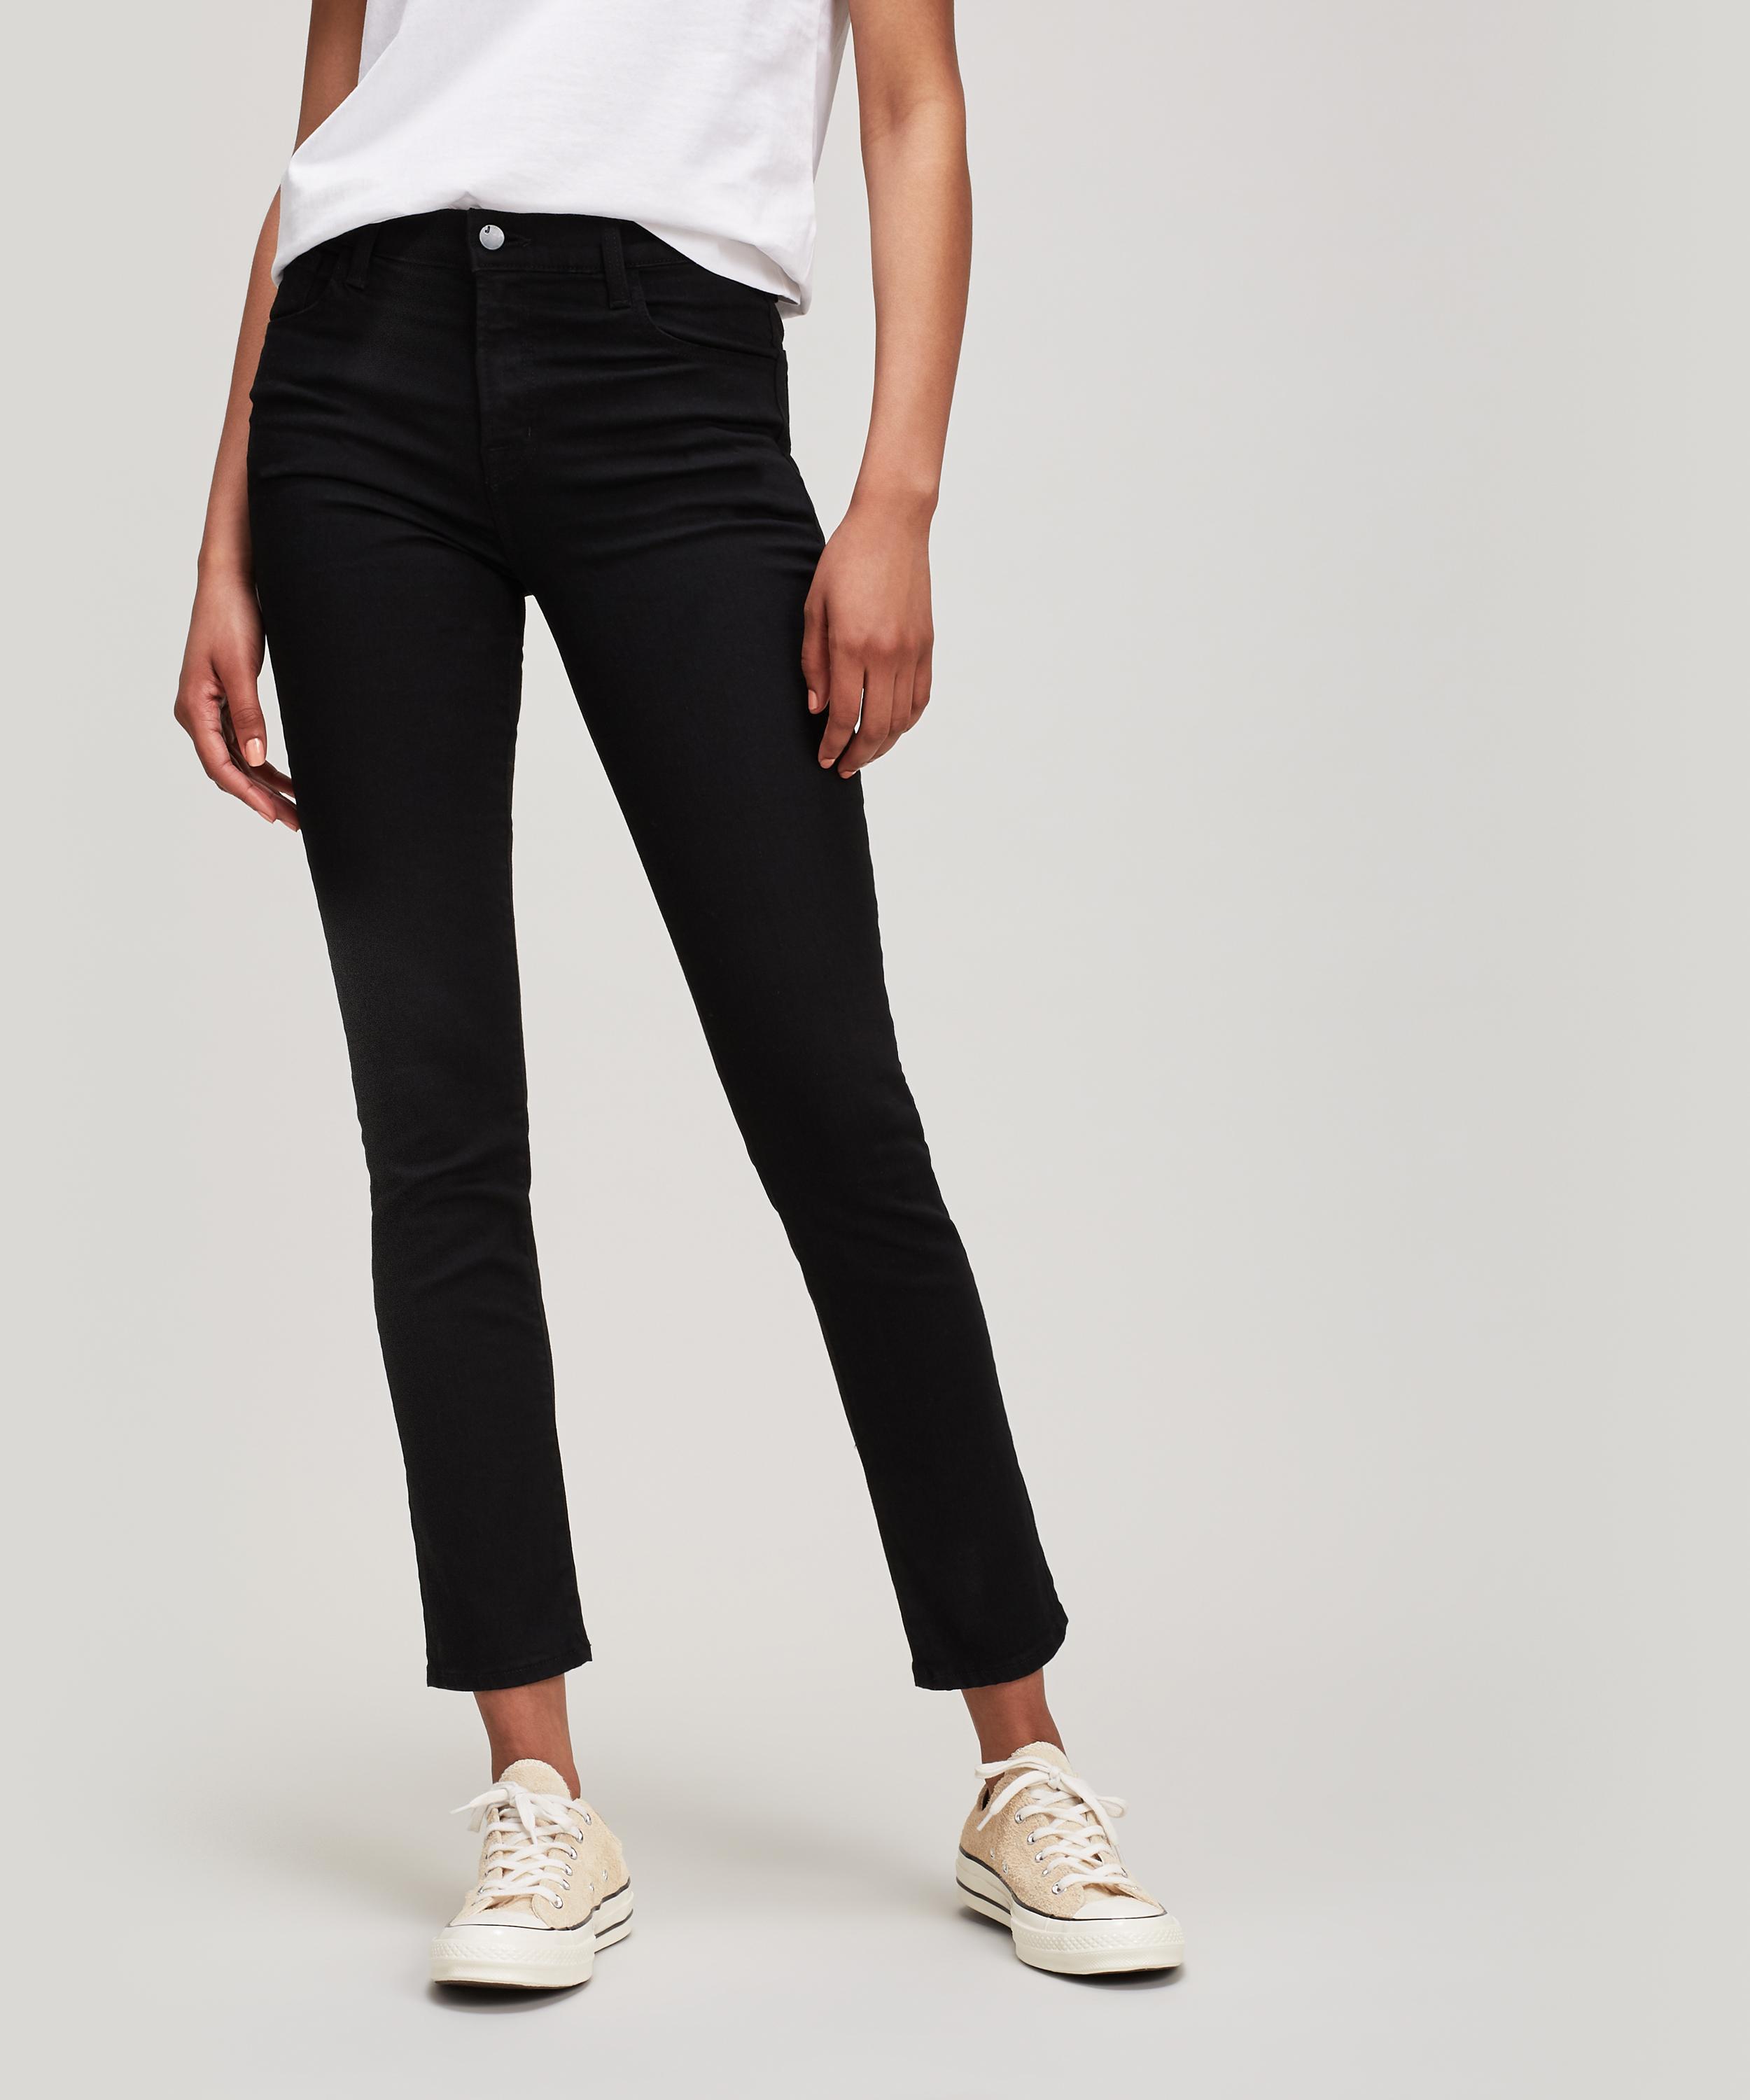 J Brand Denim Ruby 30 Crop High Rise Cigarette Jeans in Black - Lyst